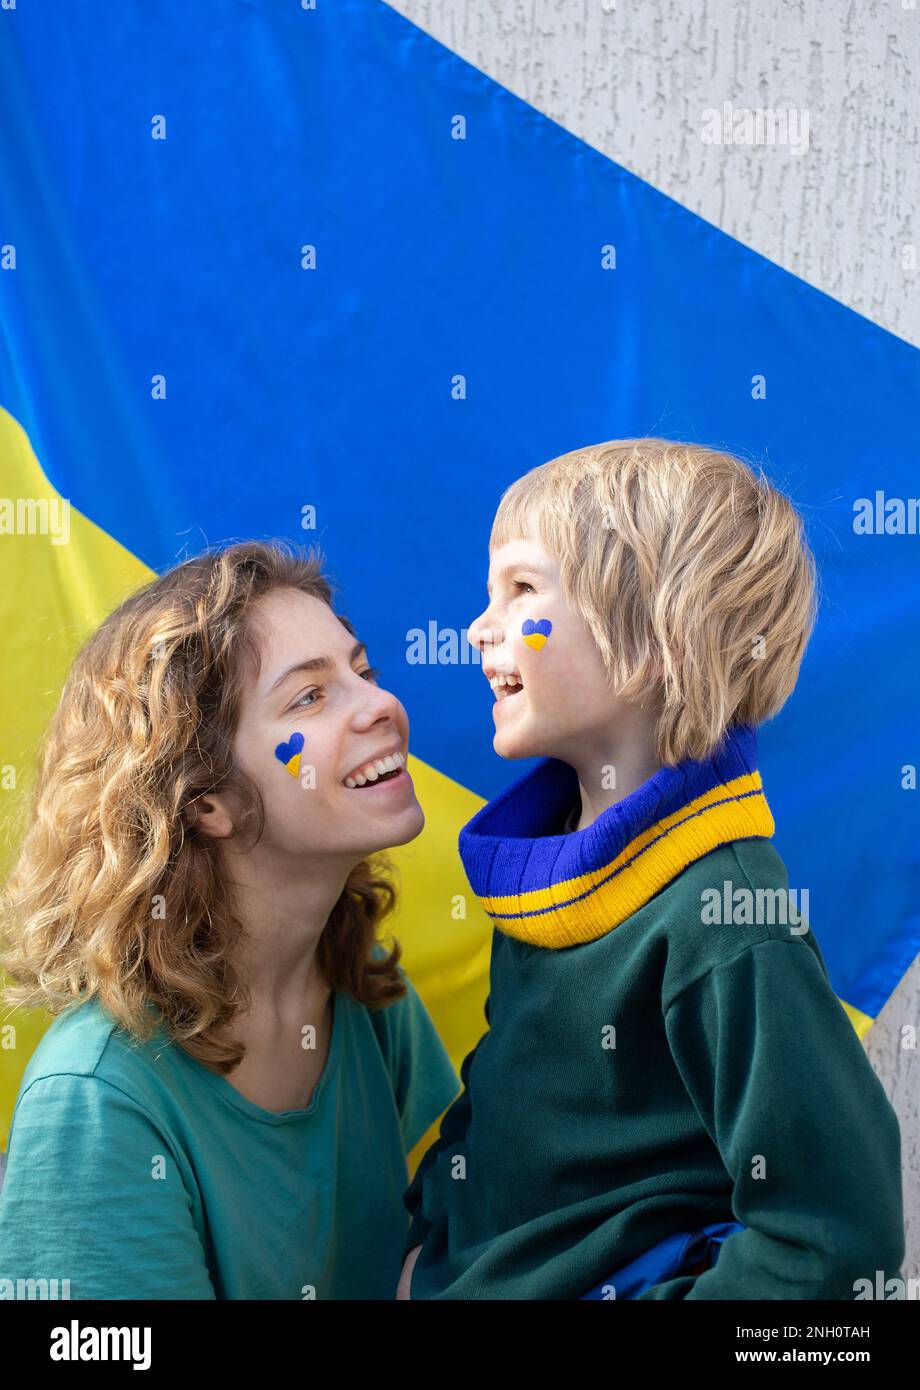 Volti di felice ragazzino e ragazza adulta, fratello e sorella, in profilo, il cuore è disegnato sulla guancia in giallo blu colori della bandiera Ucraina. patriottismo, Foto Stock